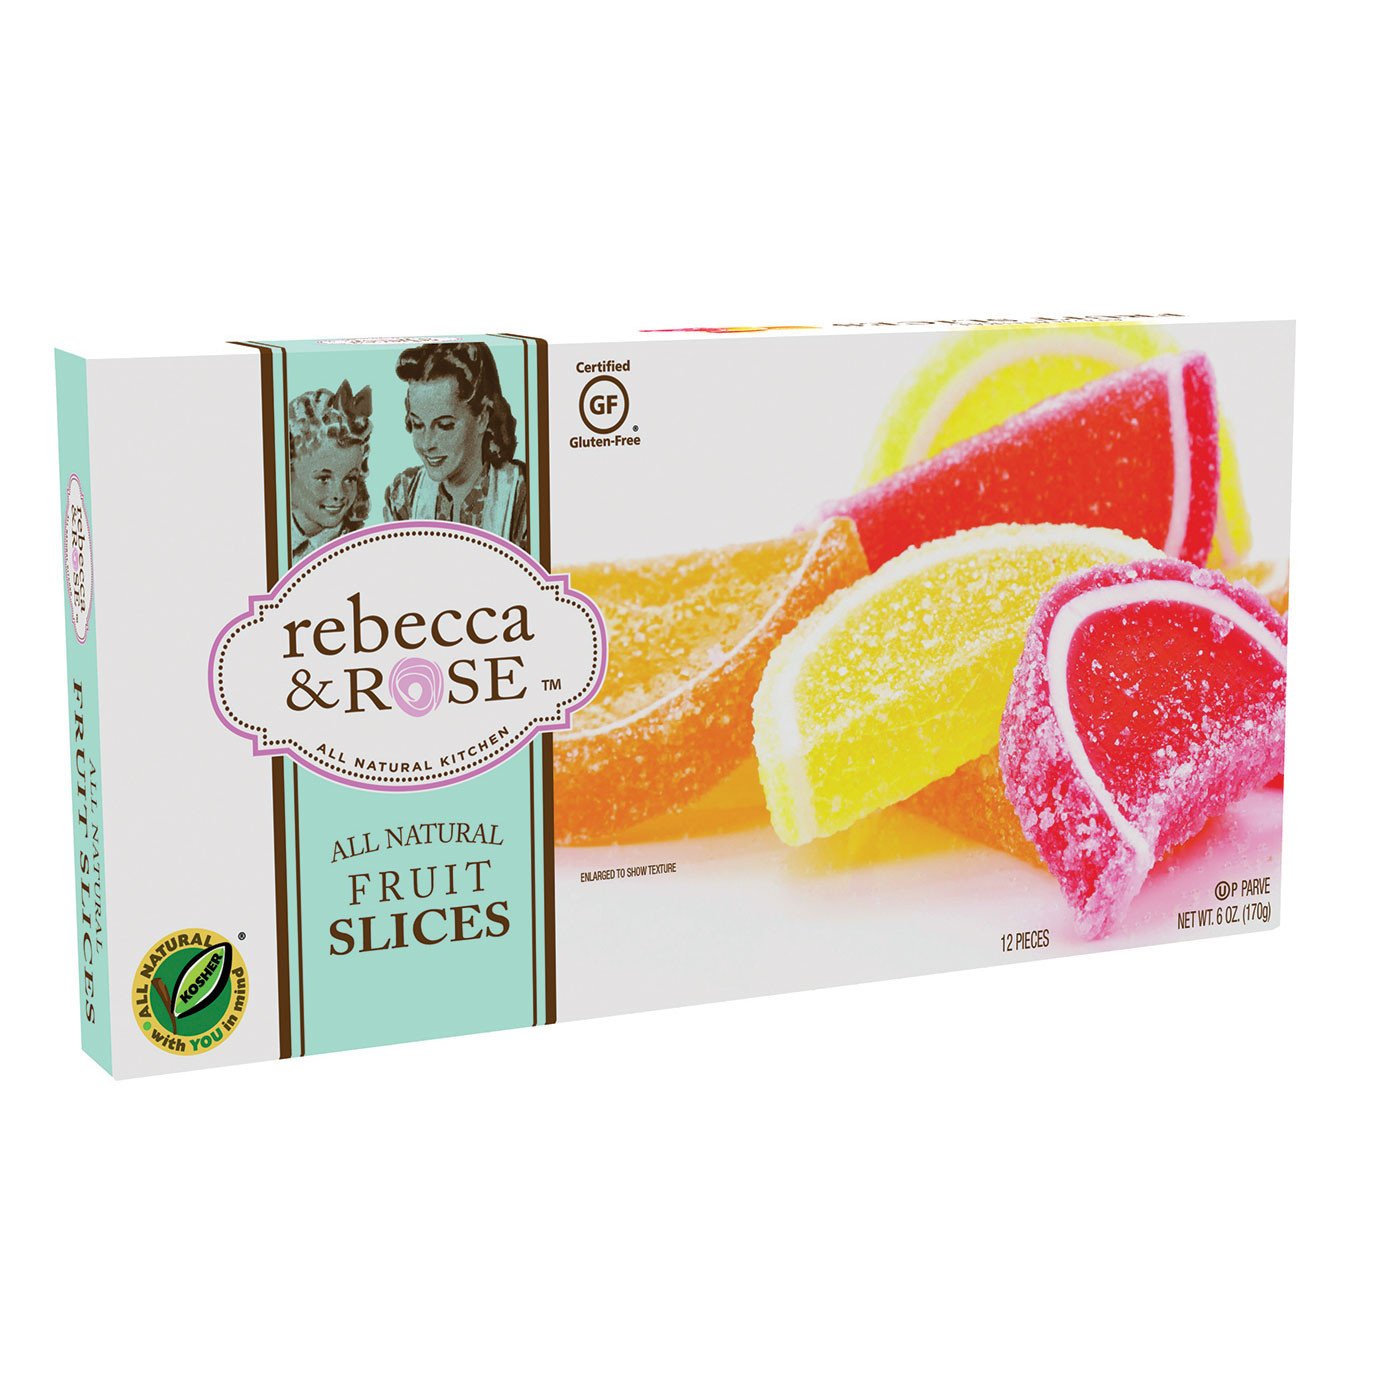 Rebecca & Rose fruit slices 6 oz